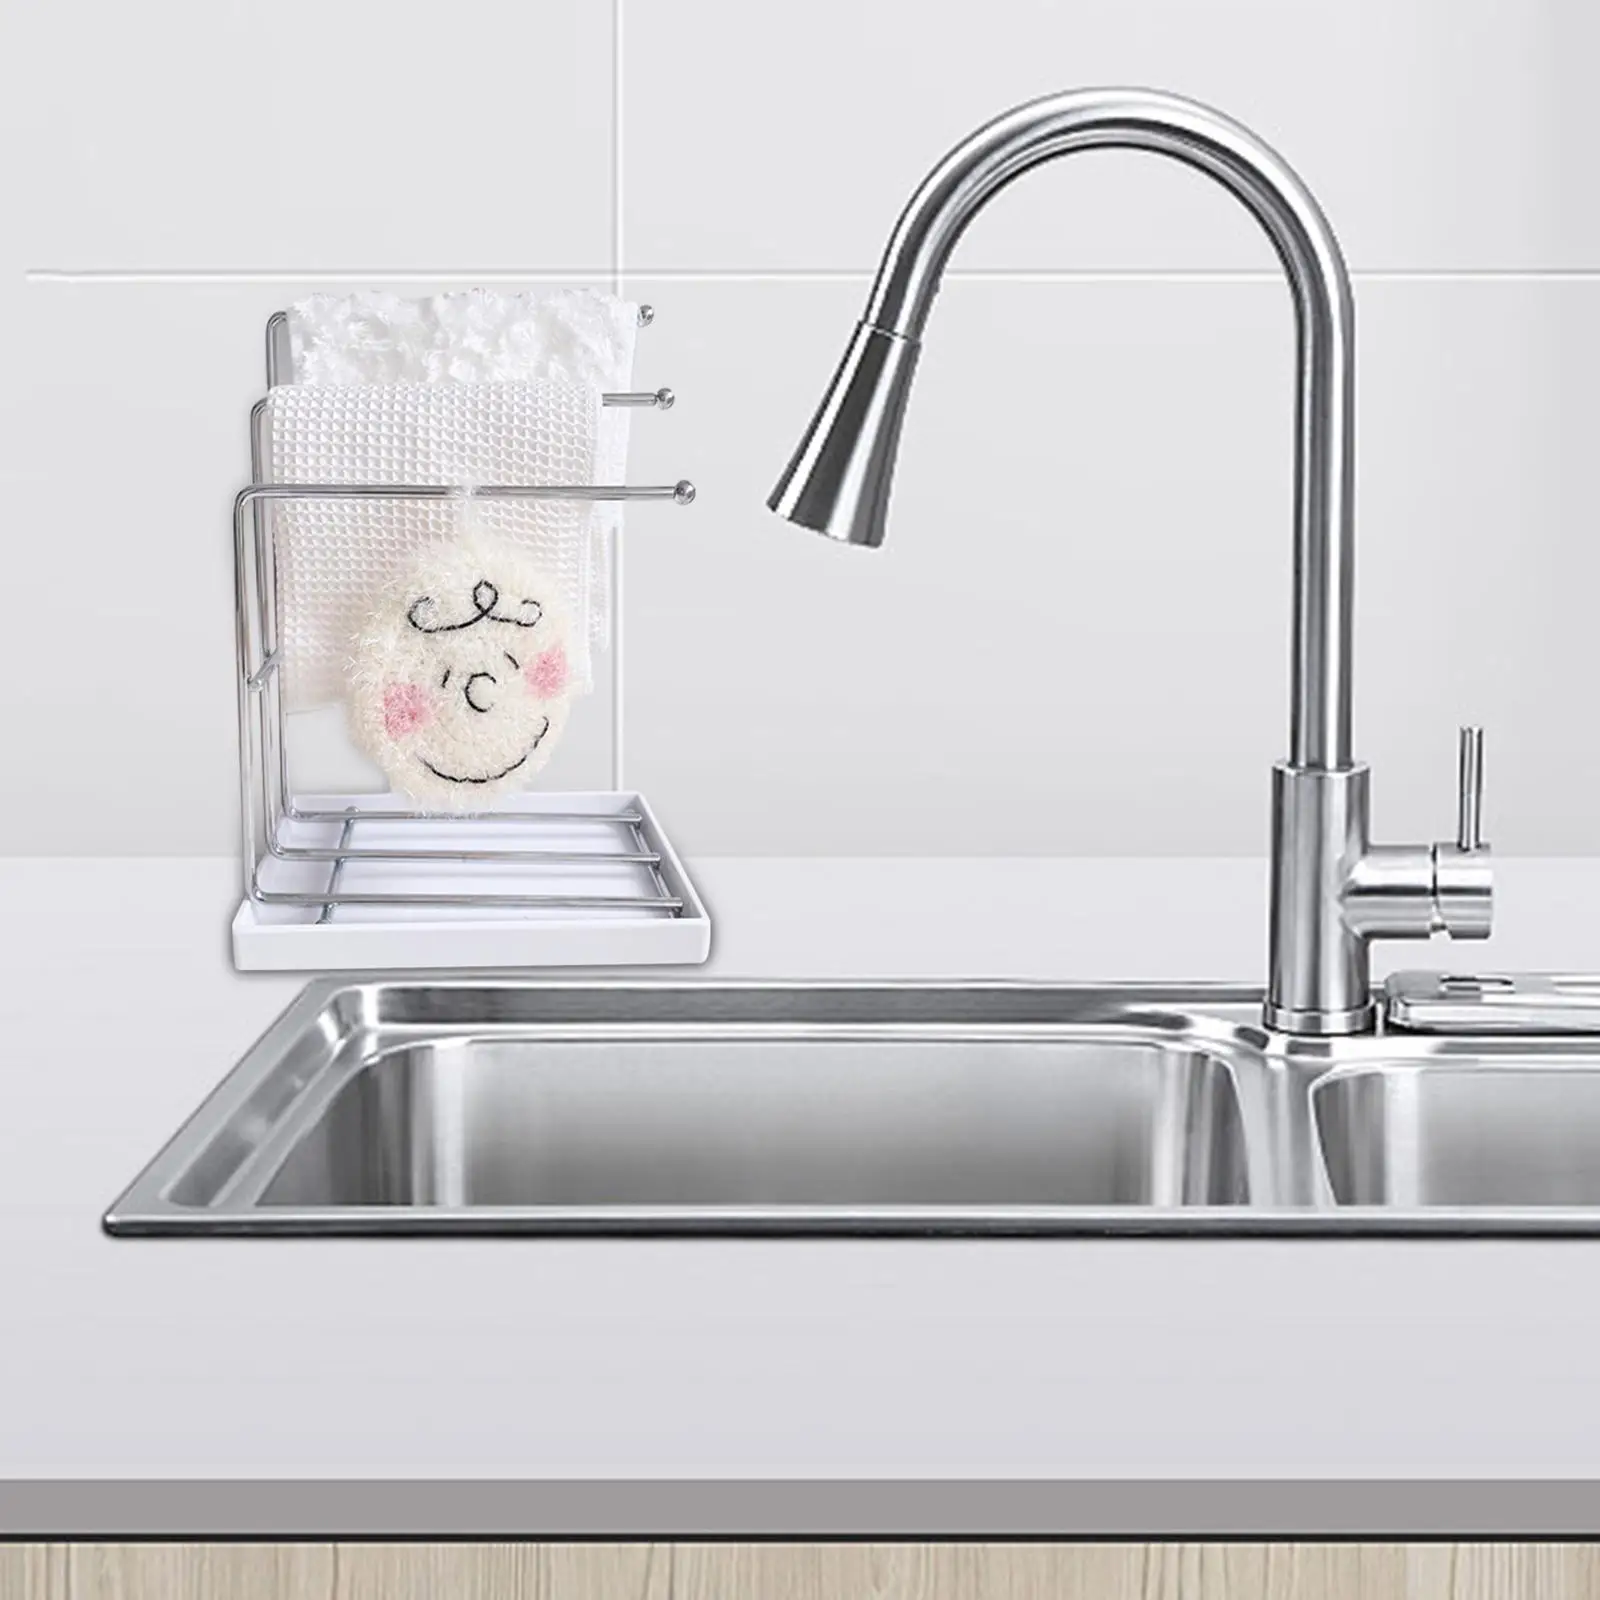 Sink Organizer Dishcloth Shelf Stainless Steel Brush Soap Holder Kitchen Sponge Holder for Bathroom Sink Countertop